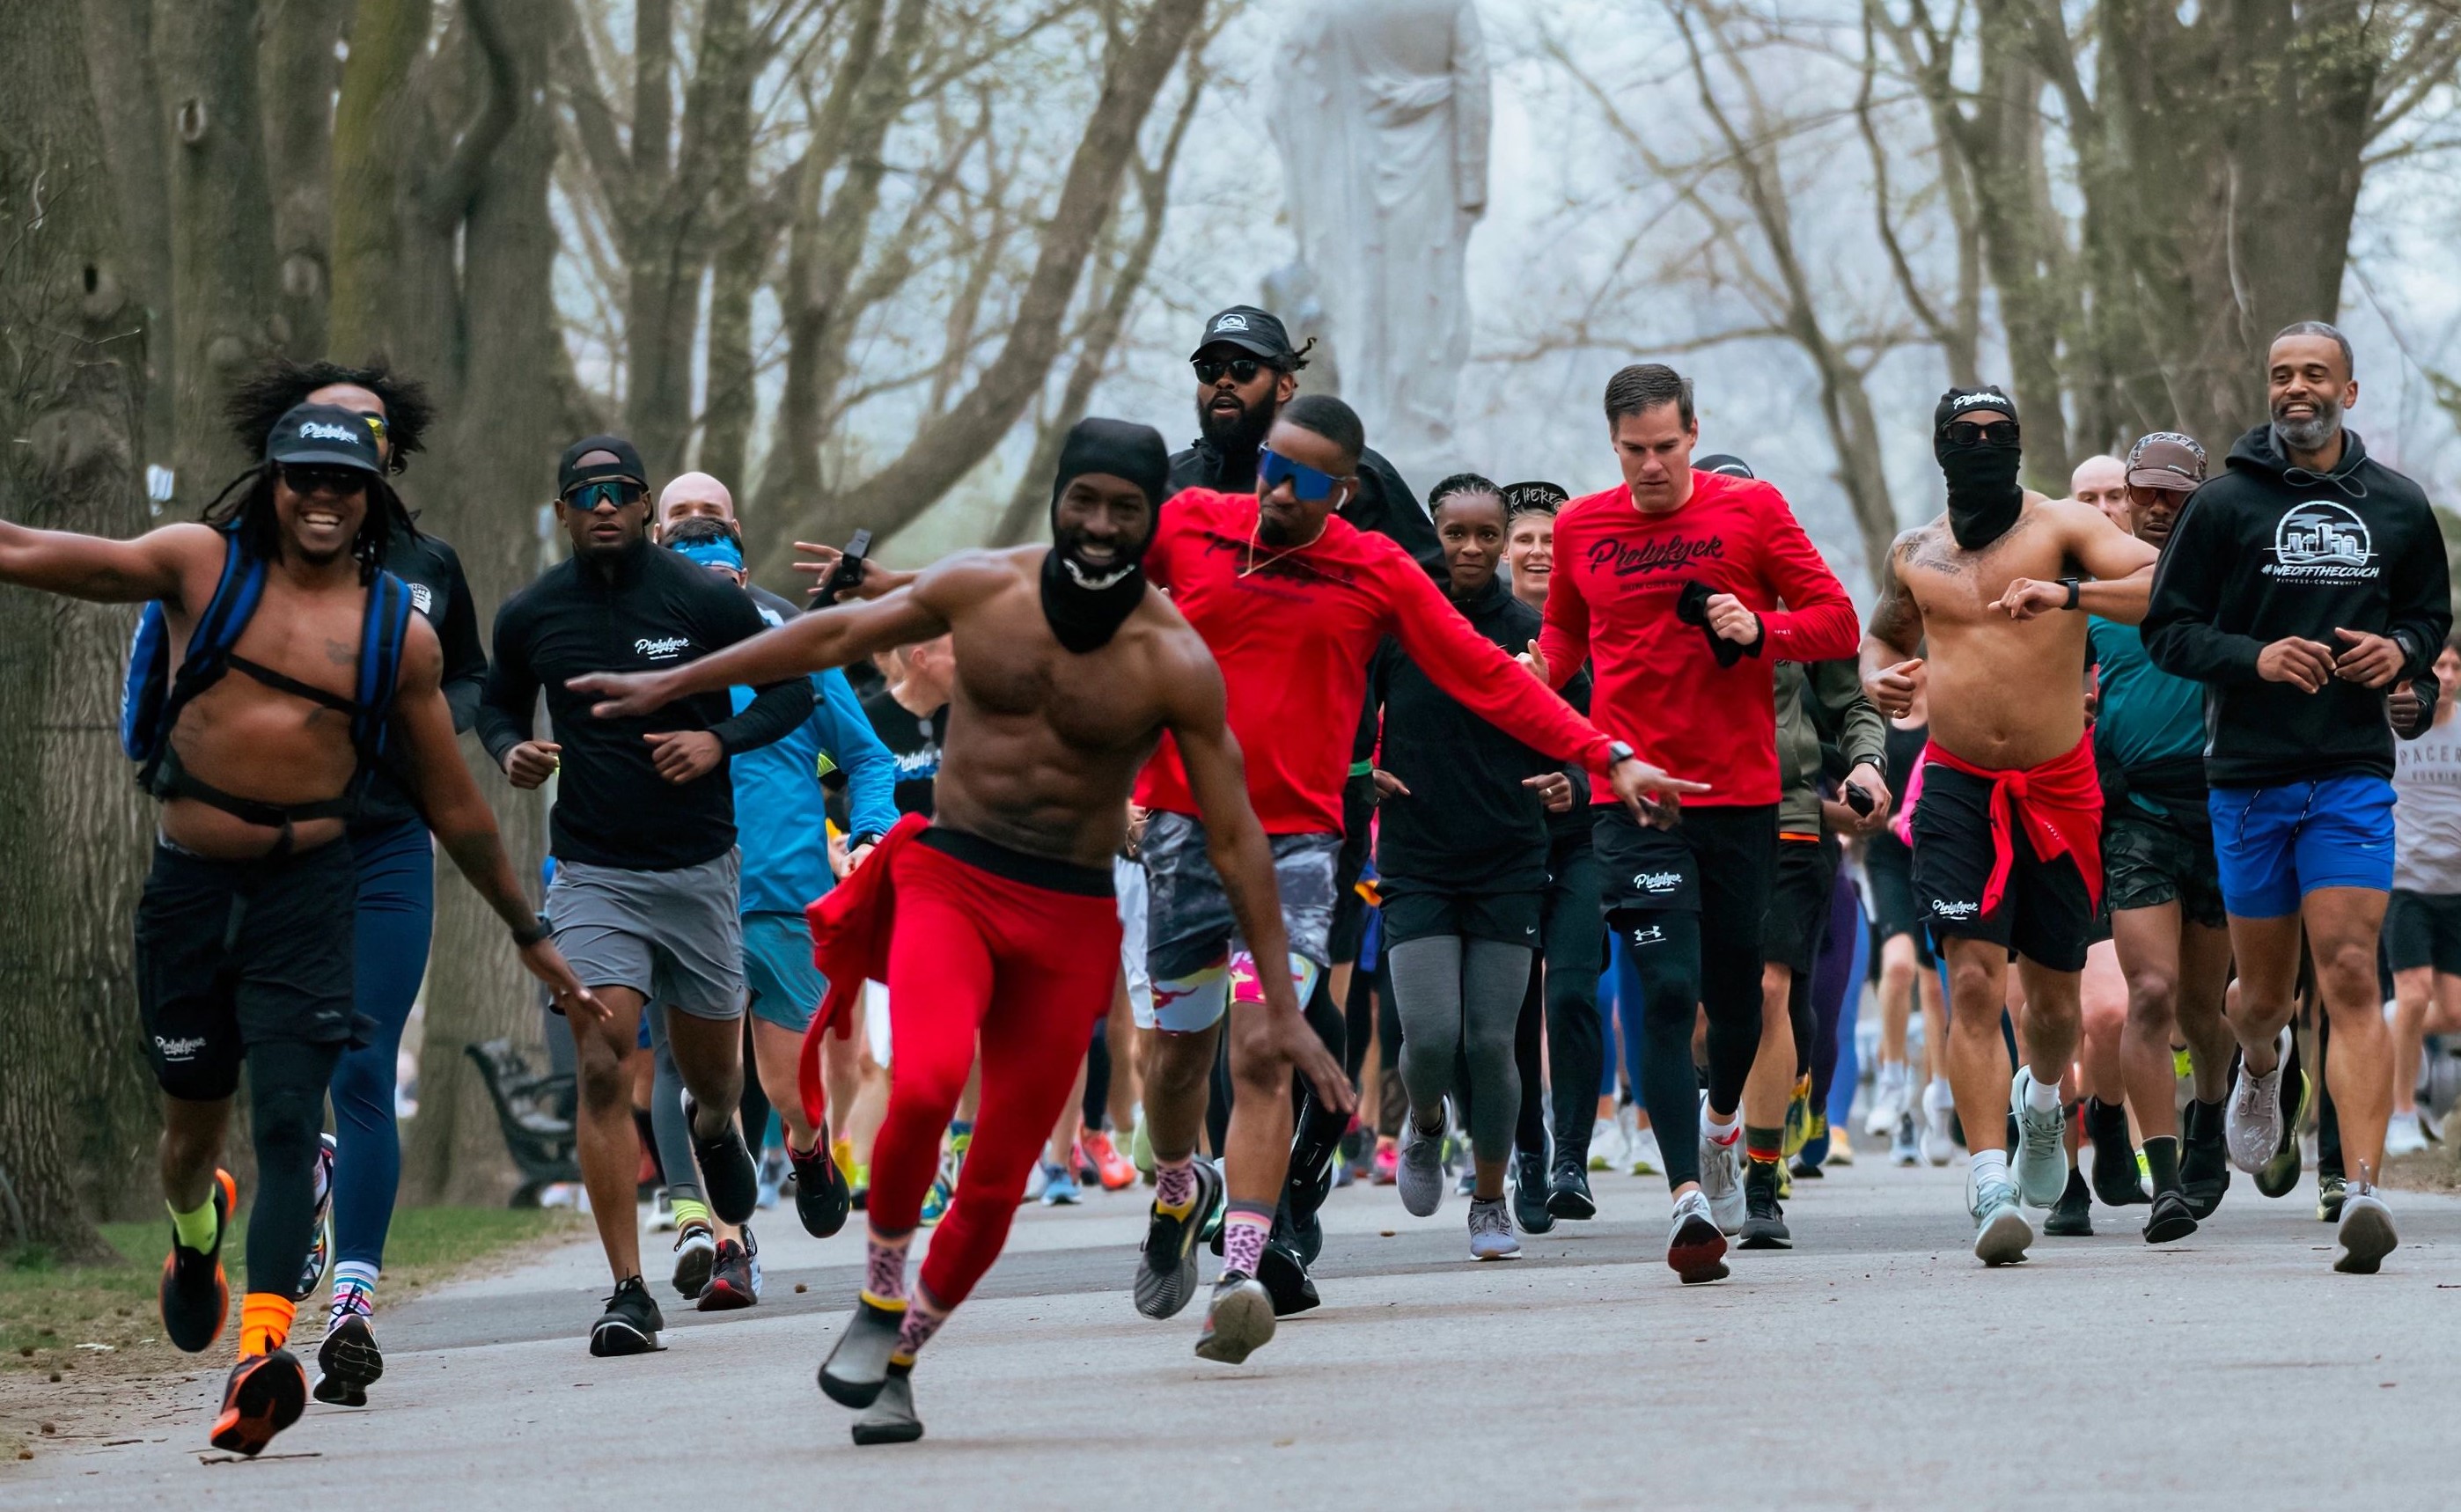 BROOKS和合作夥伴 parkrun 在四月份創下超過32萬名跑者和健行者參加的紀錄